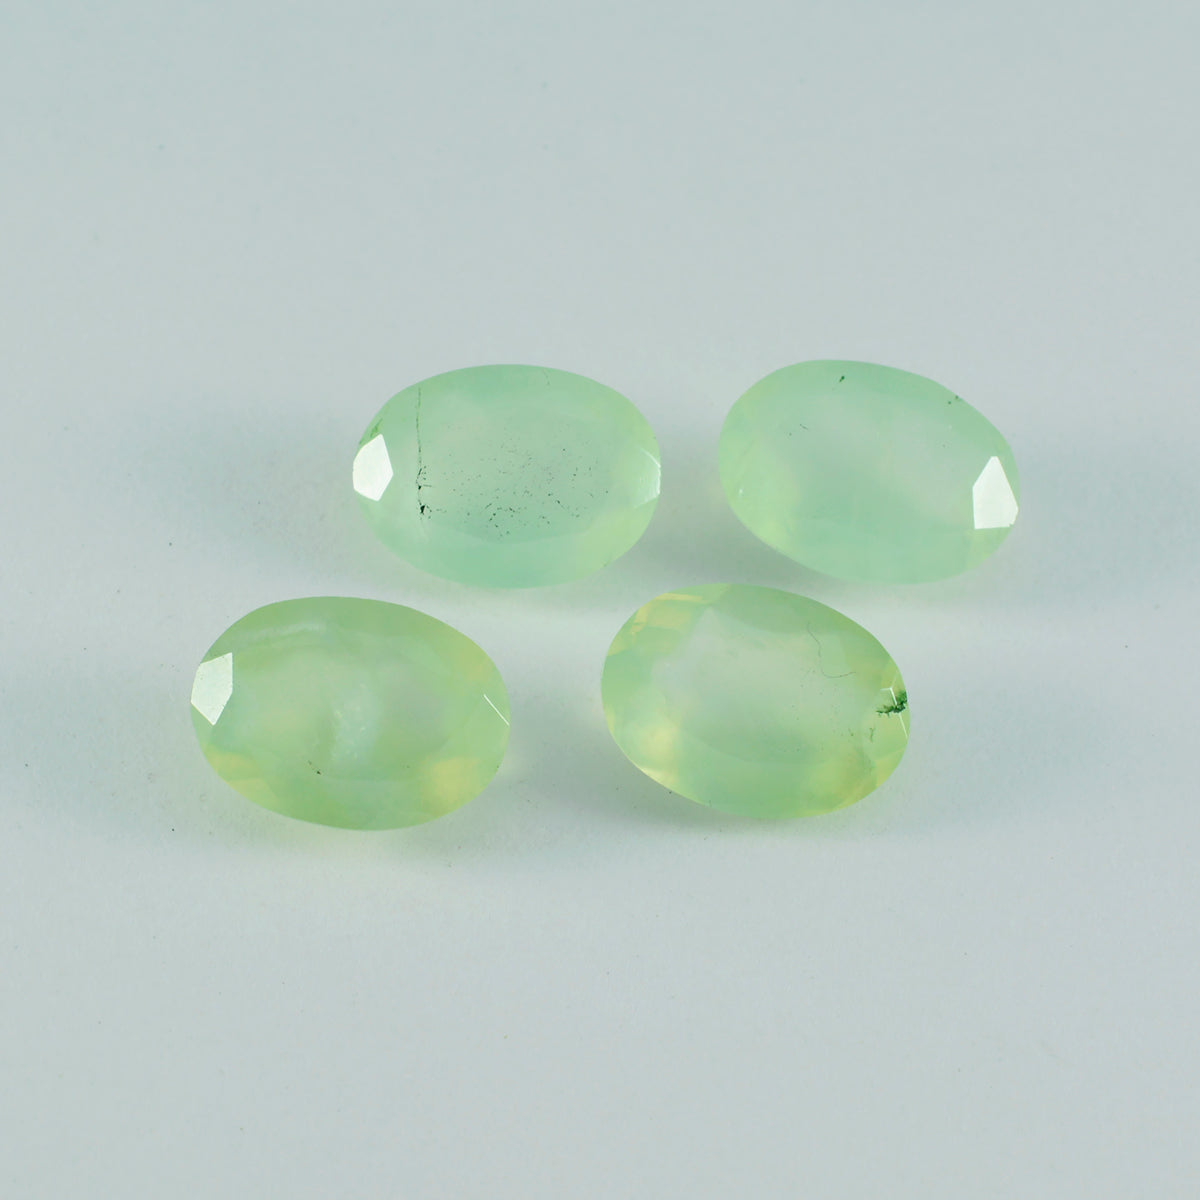 riyogems 1шт зеленый пренит ограненный 10х12 мм драгоценный камень овальной формы отличное качество